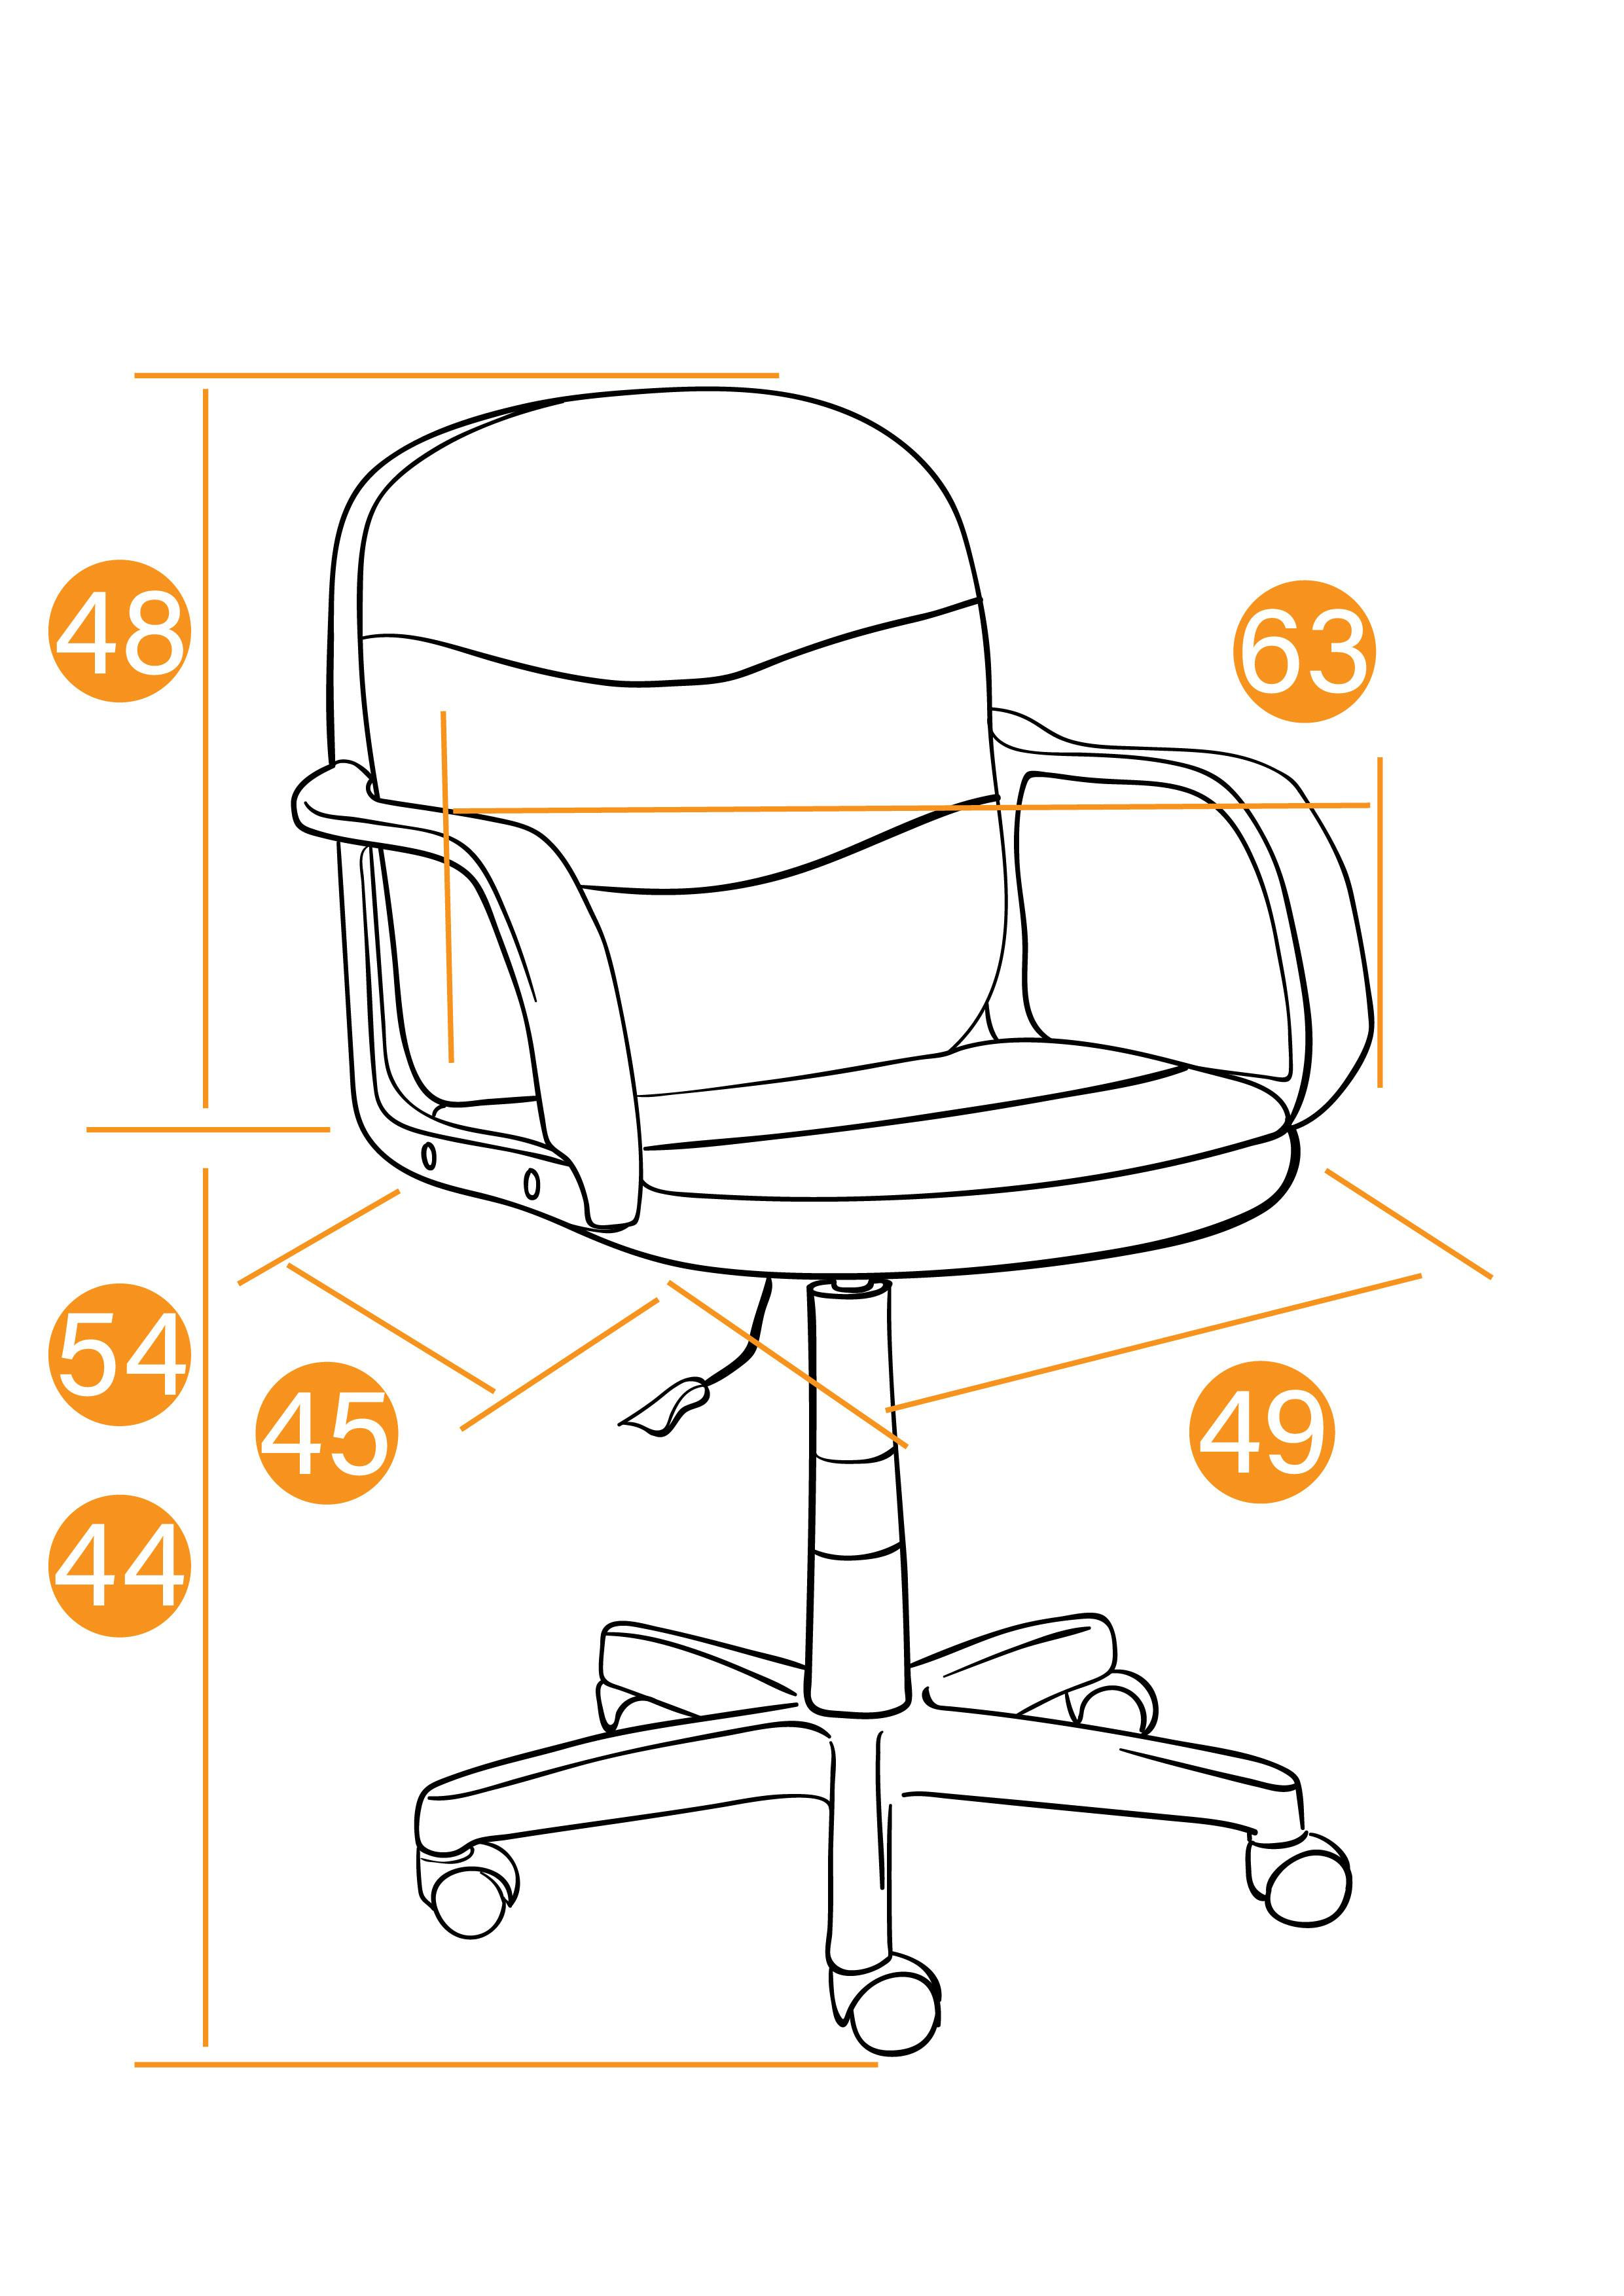 Кресло BAGGI ткань, коричневый/оранжевый, 3М7-147/С23